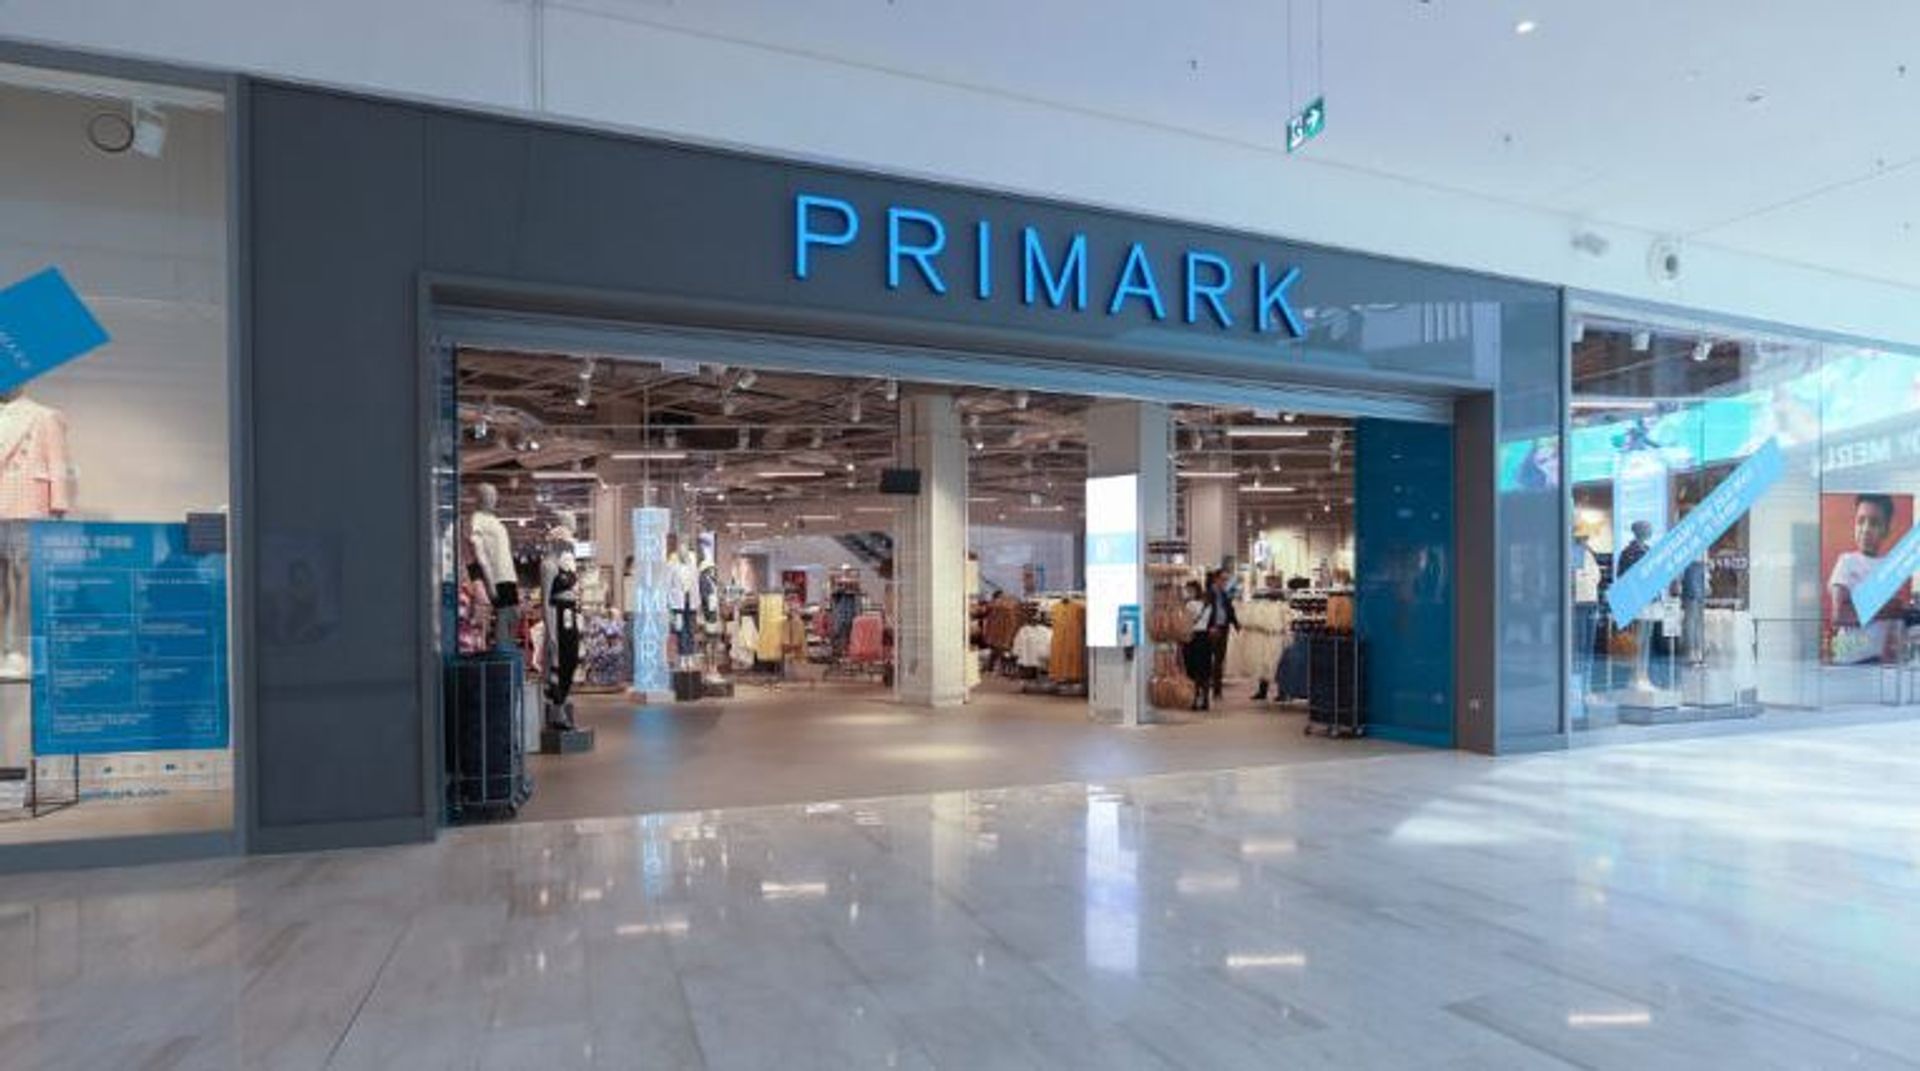 Trwają przygotowania do otwarcia pierwszego sklepu irlandzkiej marki Primark we Wrocławiu